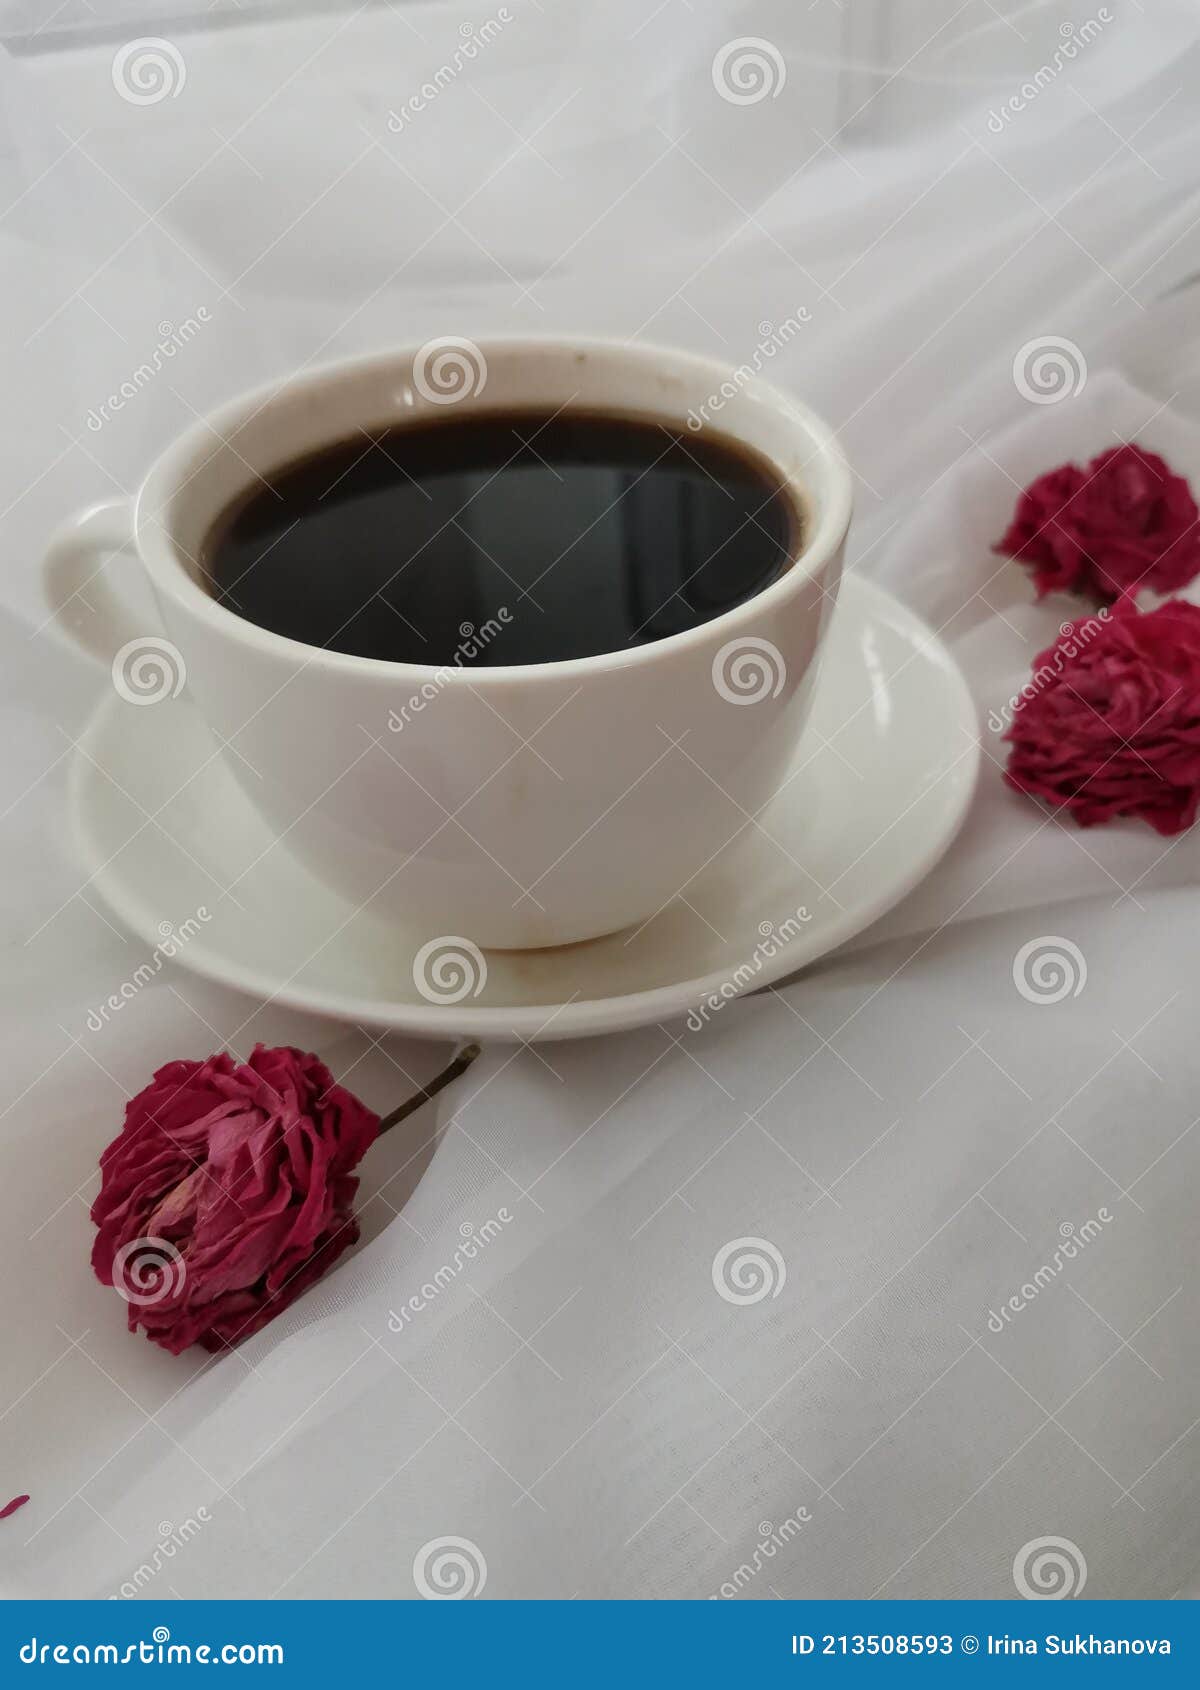 玫瑰 早餐 咖啡 - Pixabay上的免费照片 - Pixabay